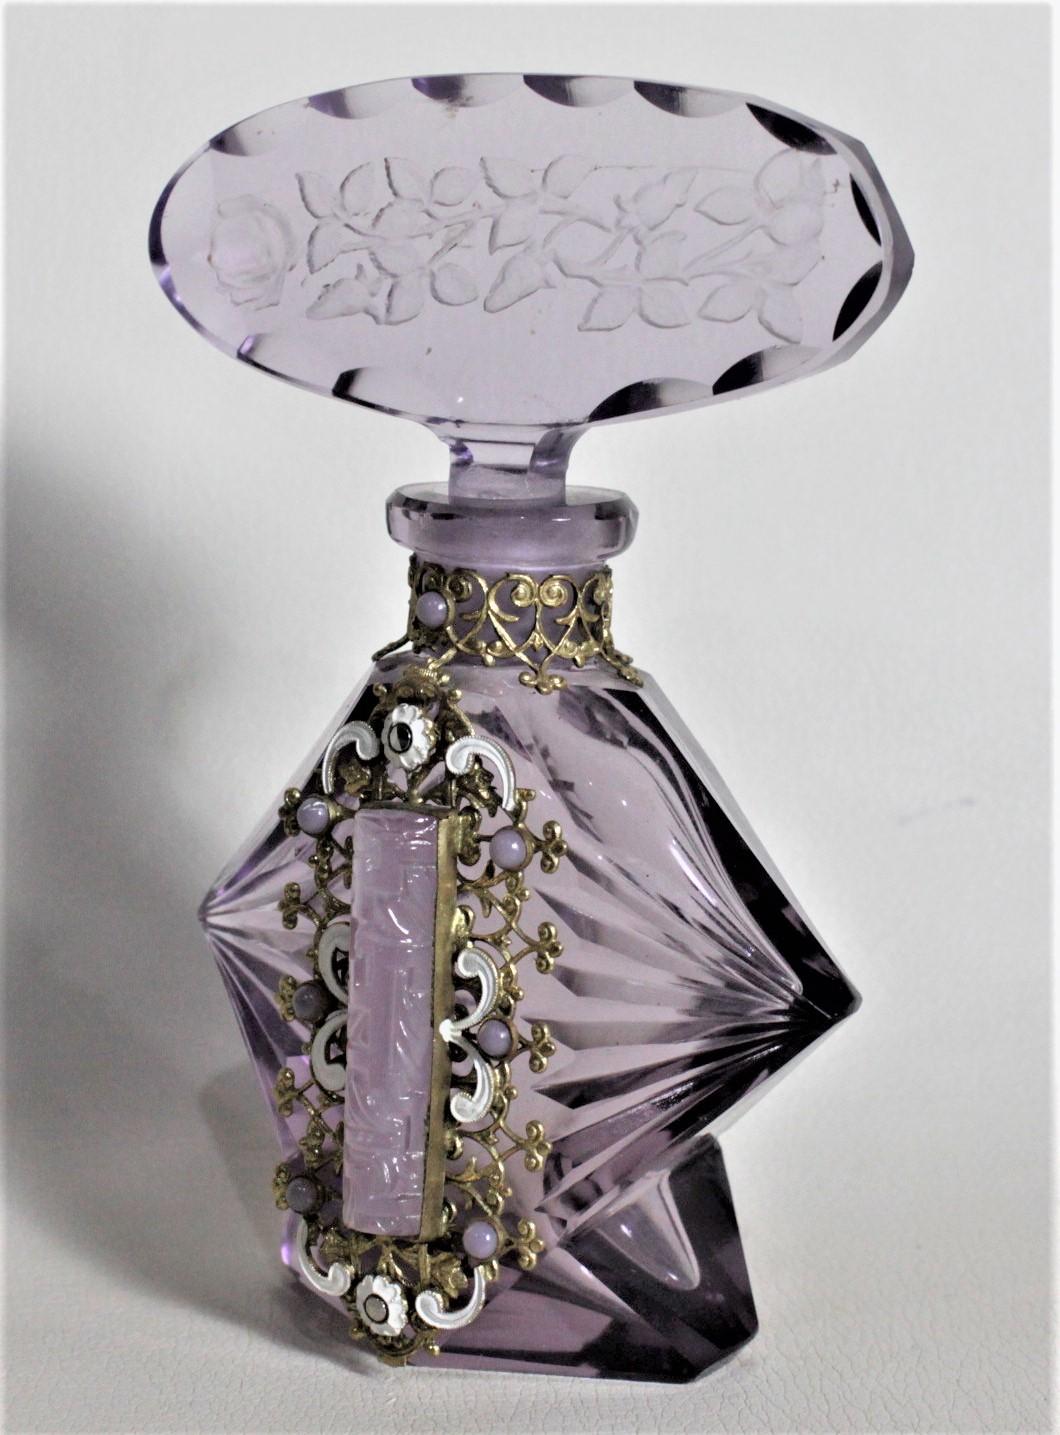 Dieser Art-Déco-Flakon für Parfüm oder Duft ist unsigniert, wurde aber vermutlich um 1935 in Böhmen hergestellt. Das Glas hat ein tiefes Violett mit tief facettierten Seiten und einer geätzten und geschliffenen Oberseite. Der Flakon hat einen